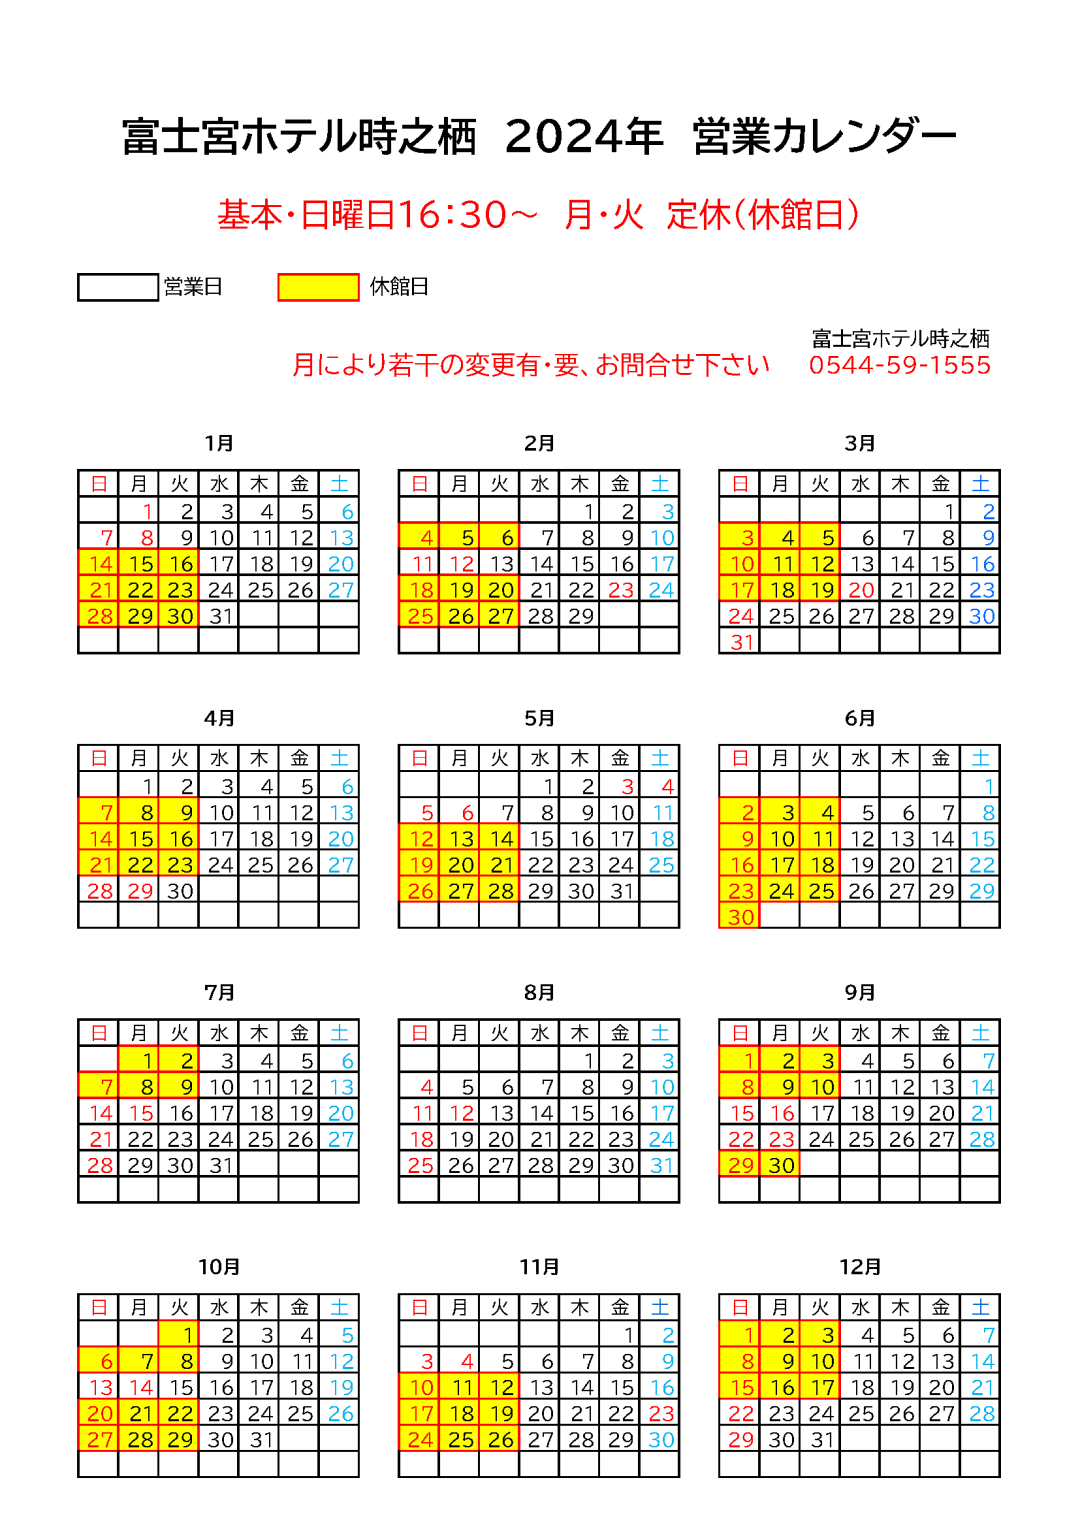 富士宮ホテルの2024年の営業カレンダーです。